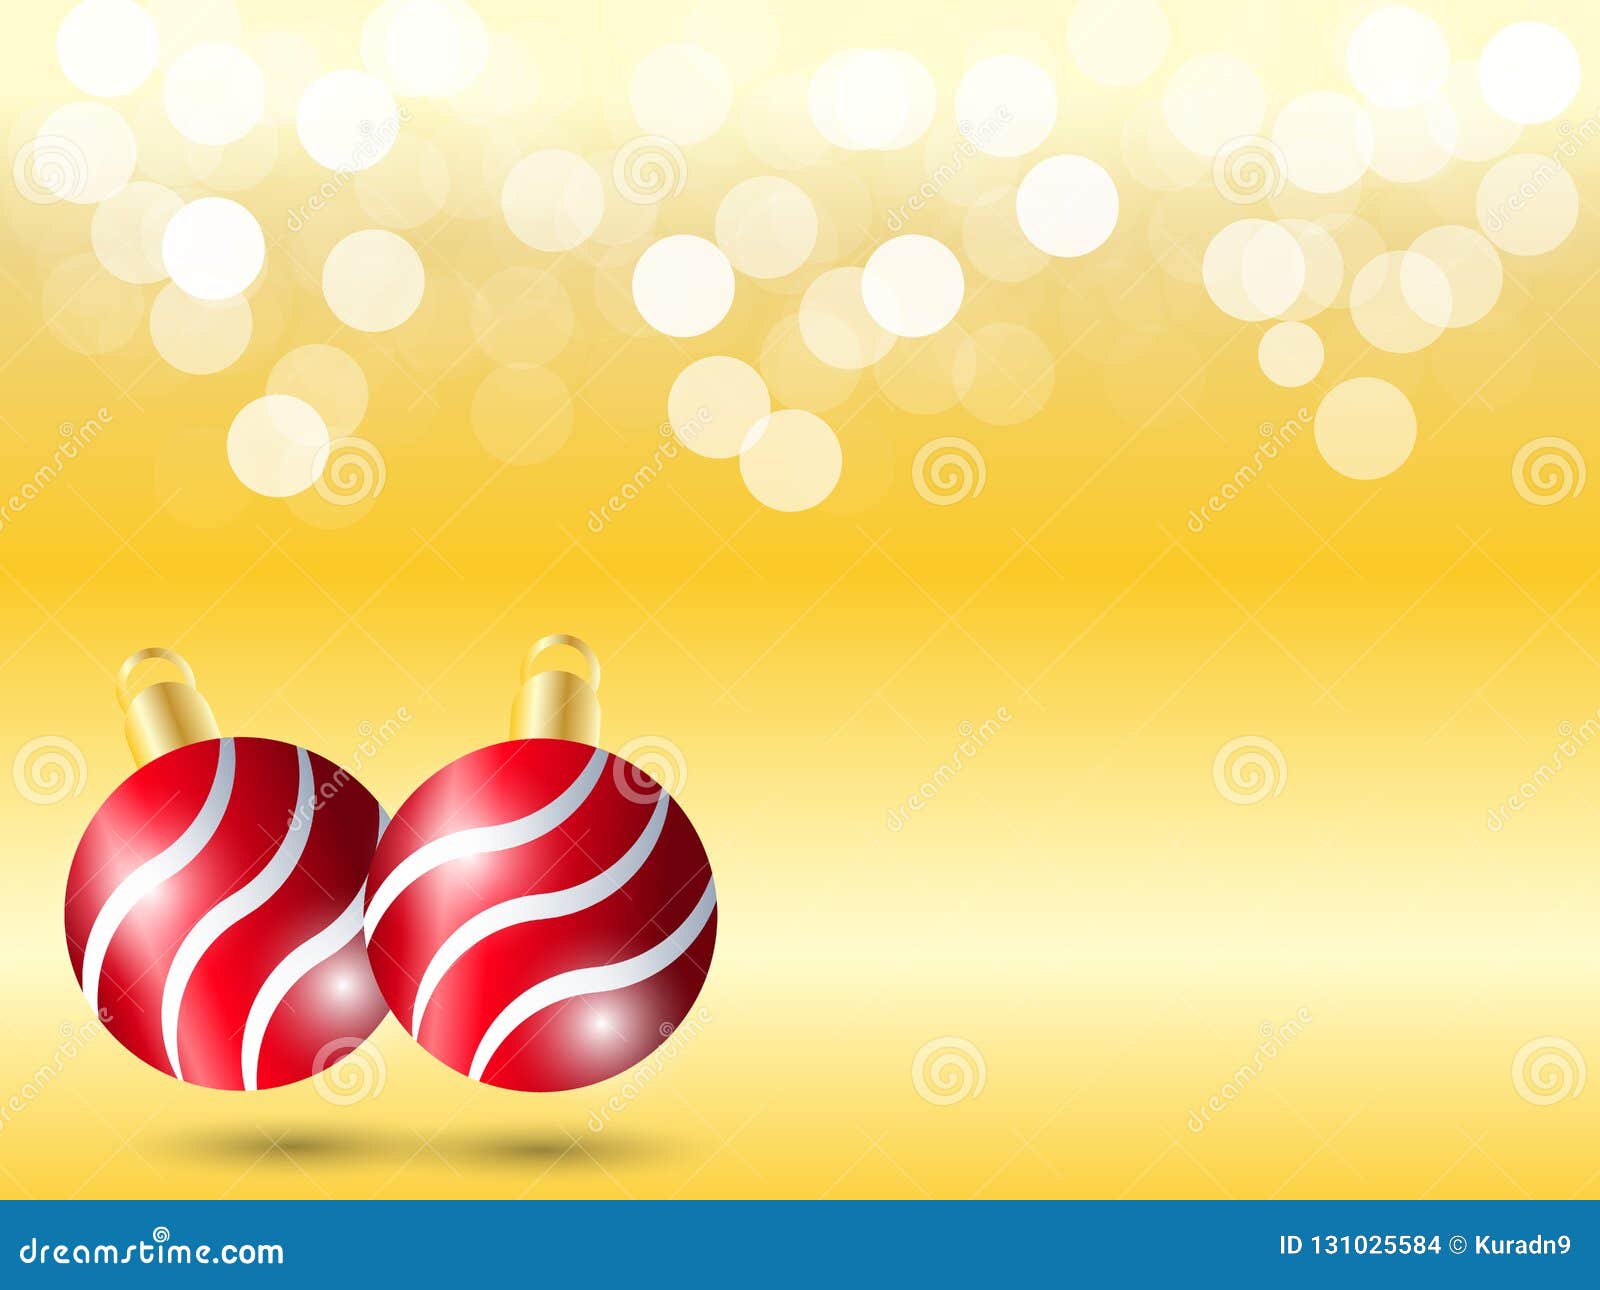 Bức hình nền Gradient vàng với ánh sáng Bokeh trắng đầy ấn tượng sẽ làm cho thiết kế của bạn trở nên hoàn hảo hơn trong mùa lễ Giáng sinh này. Hãy nhấn vào hình ảnh để tải về ngay và tận hưởng sự đam mê của thiết kế!